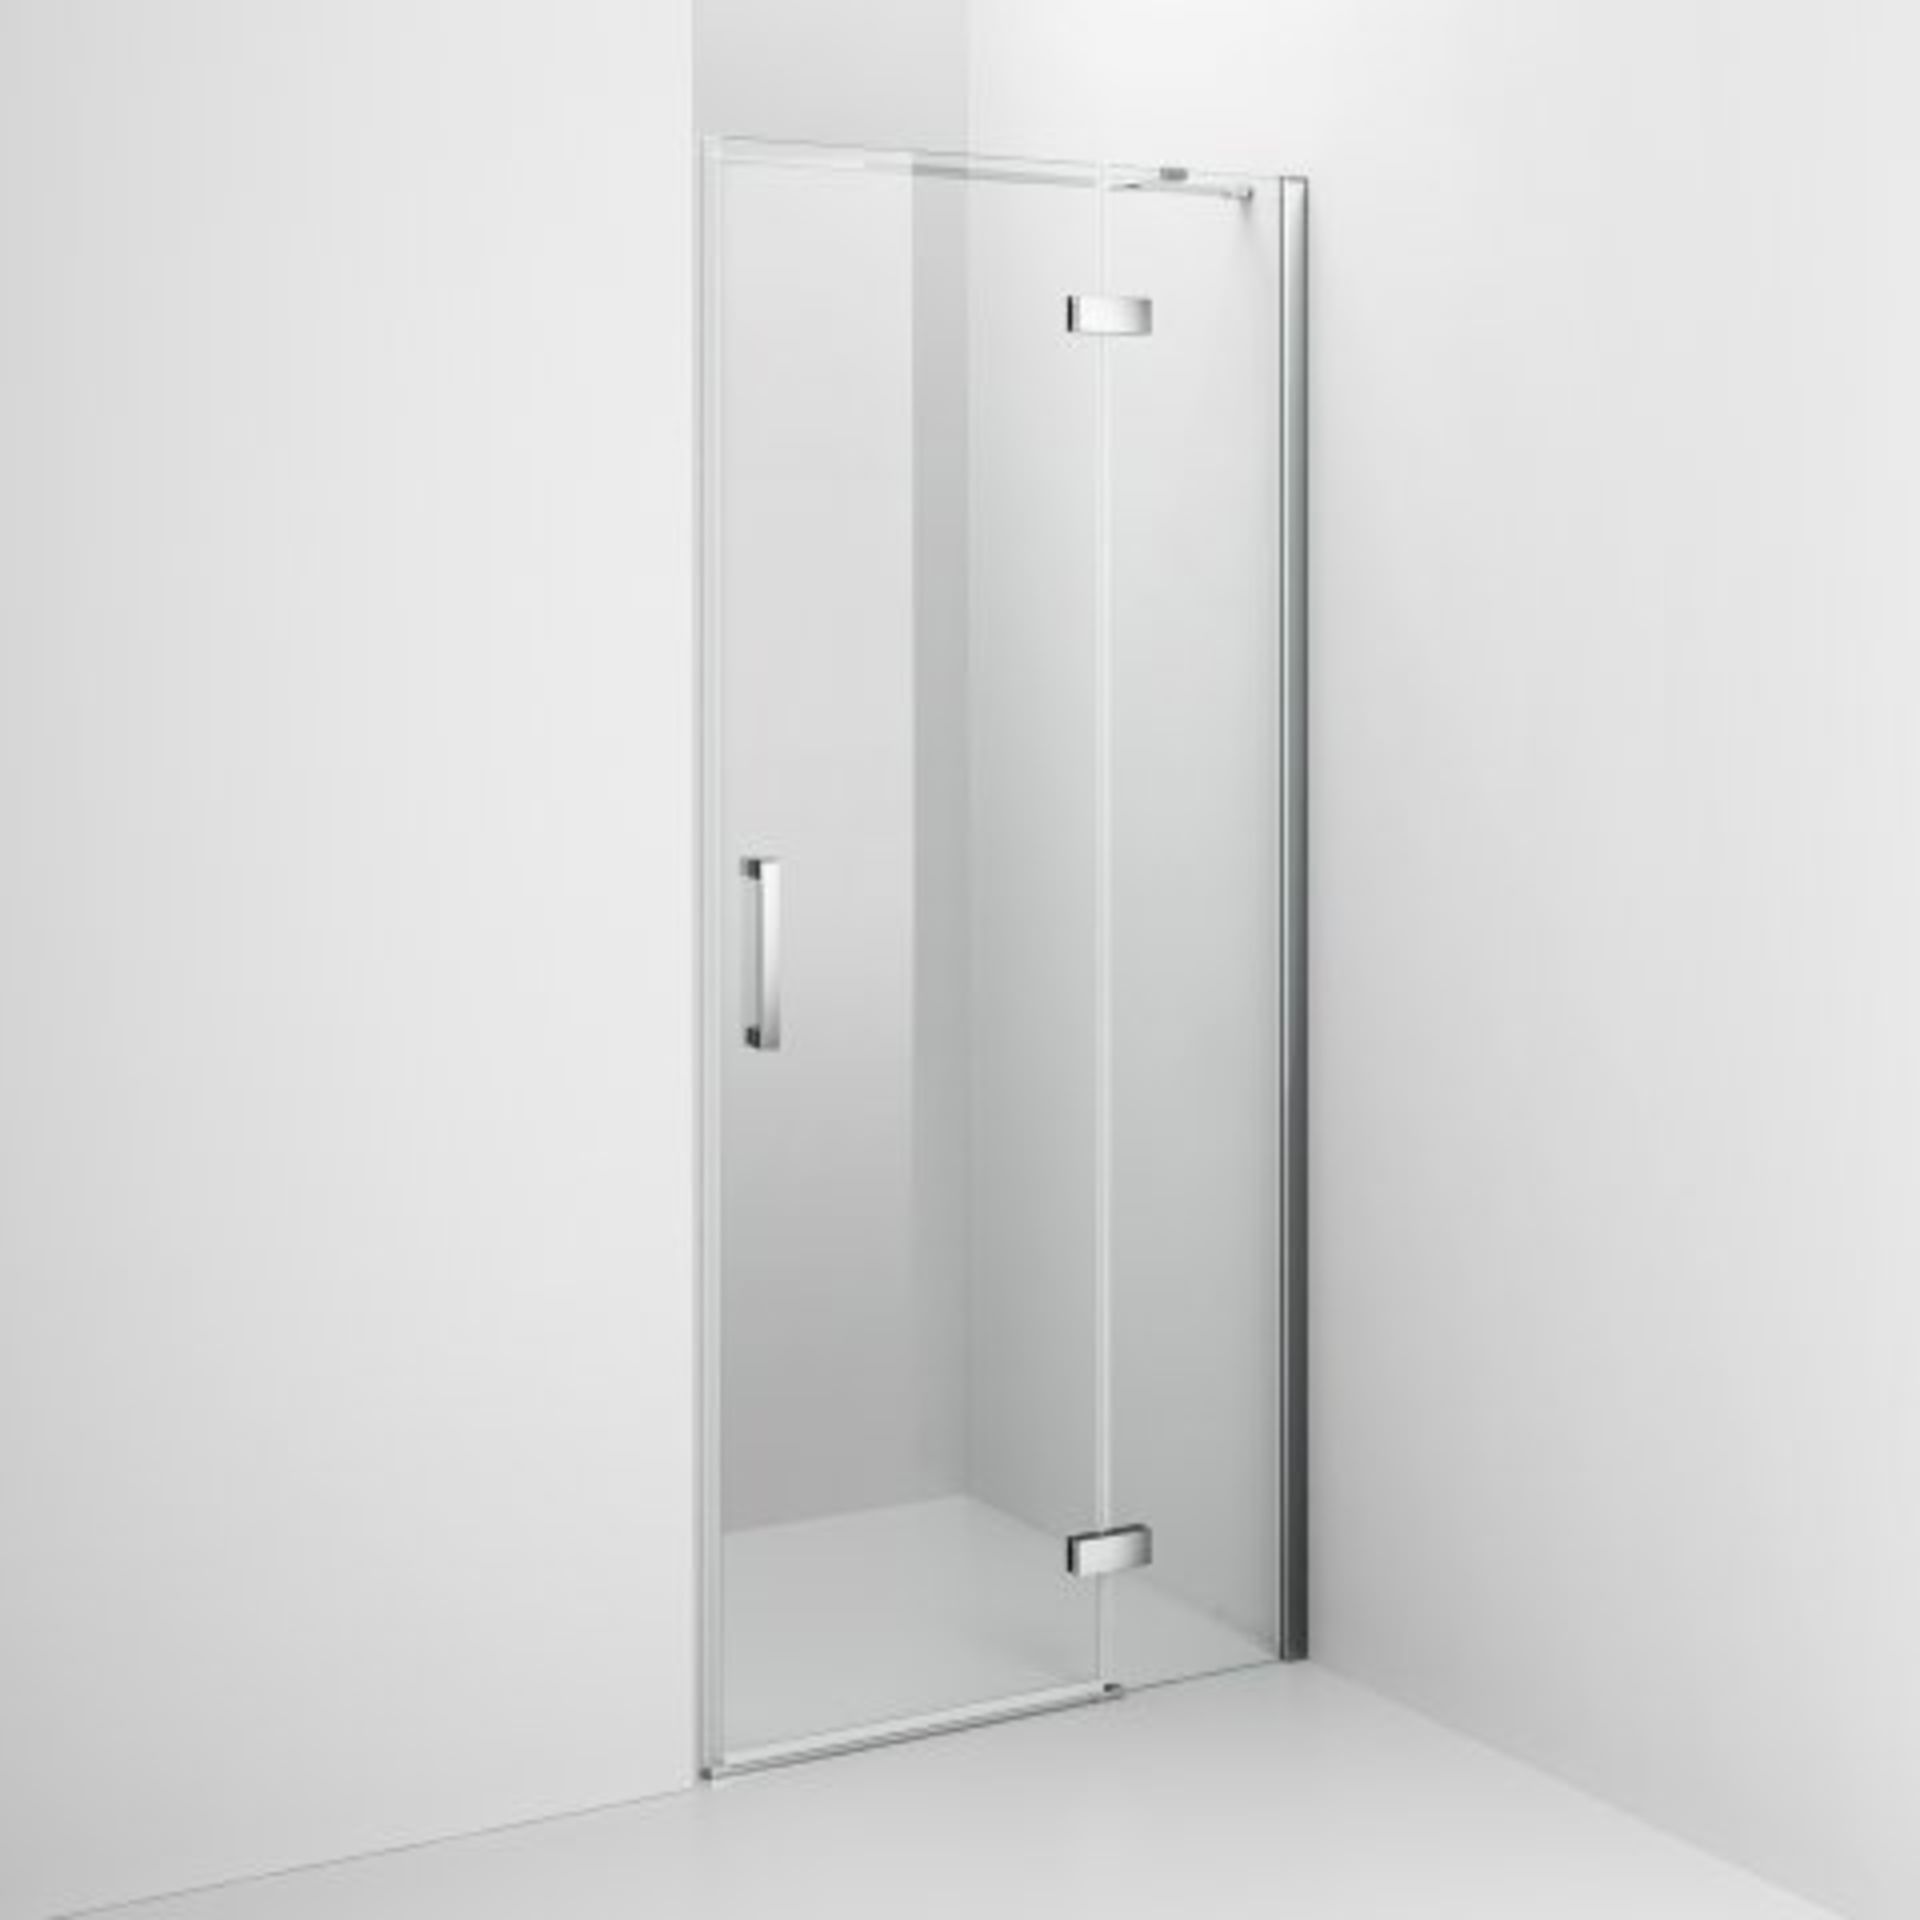 (J26) 800mm - 8mm - Premium EasyClean Hinged Shower Door RRP £499.99 Premium Design Our Premium - Bild 5 aus 8